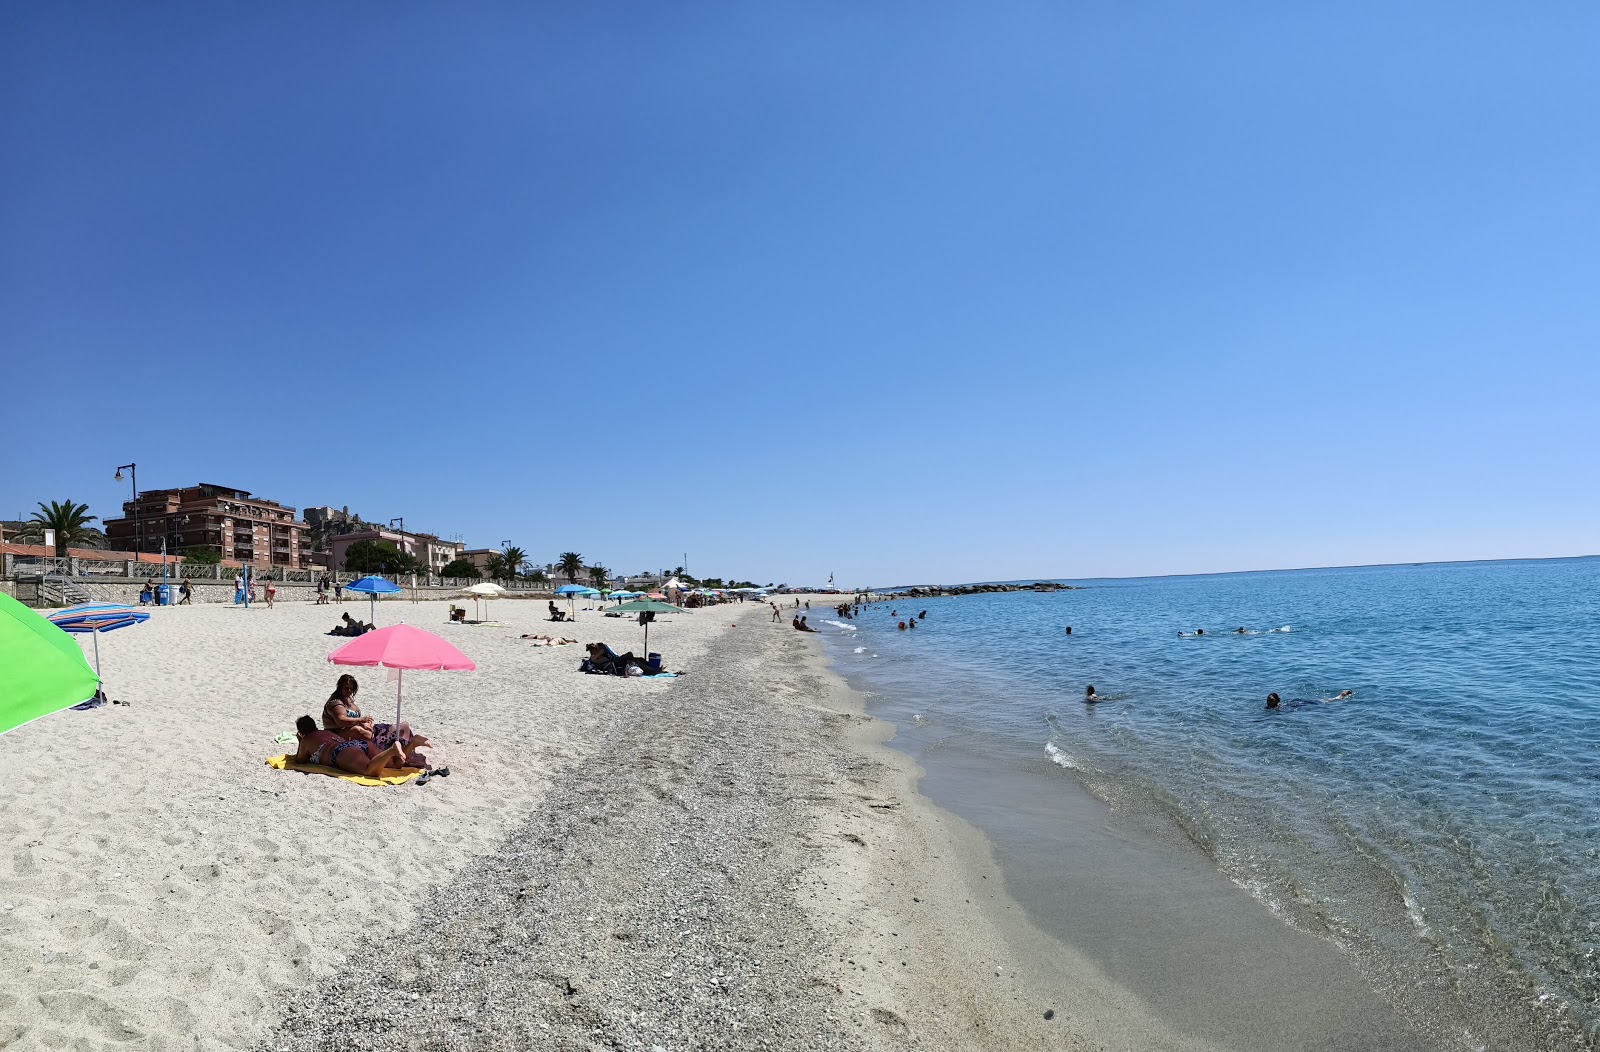 Fotografie cu Rocella Jonica beach cu o suprafață de nisip gri